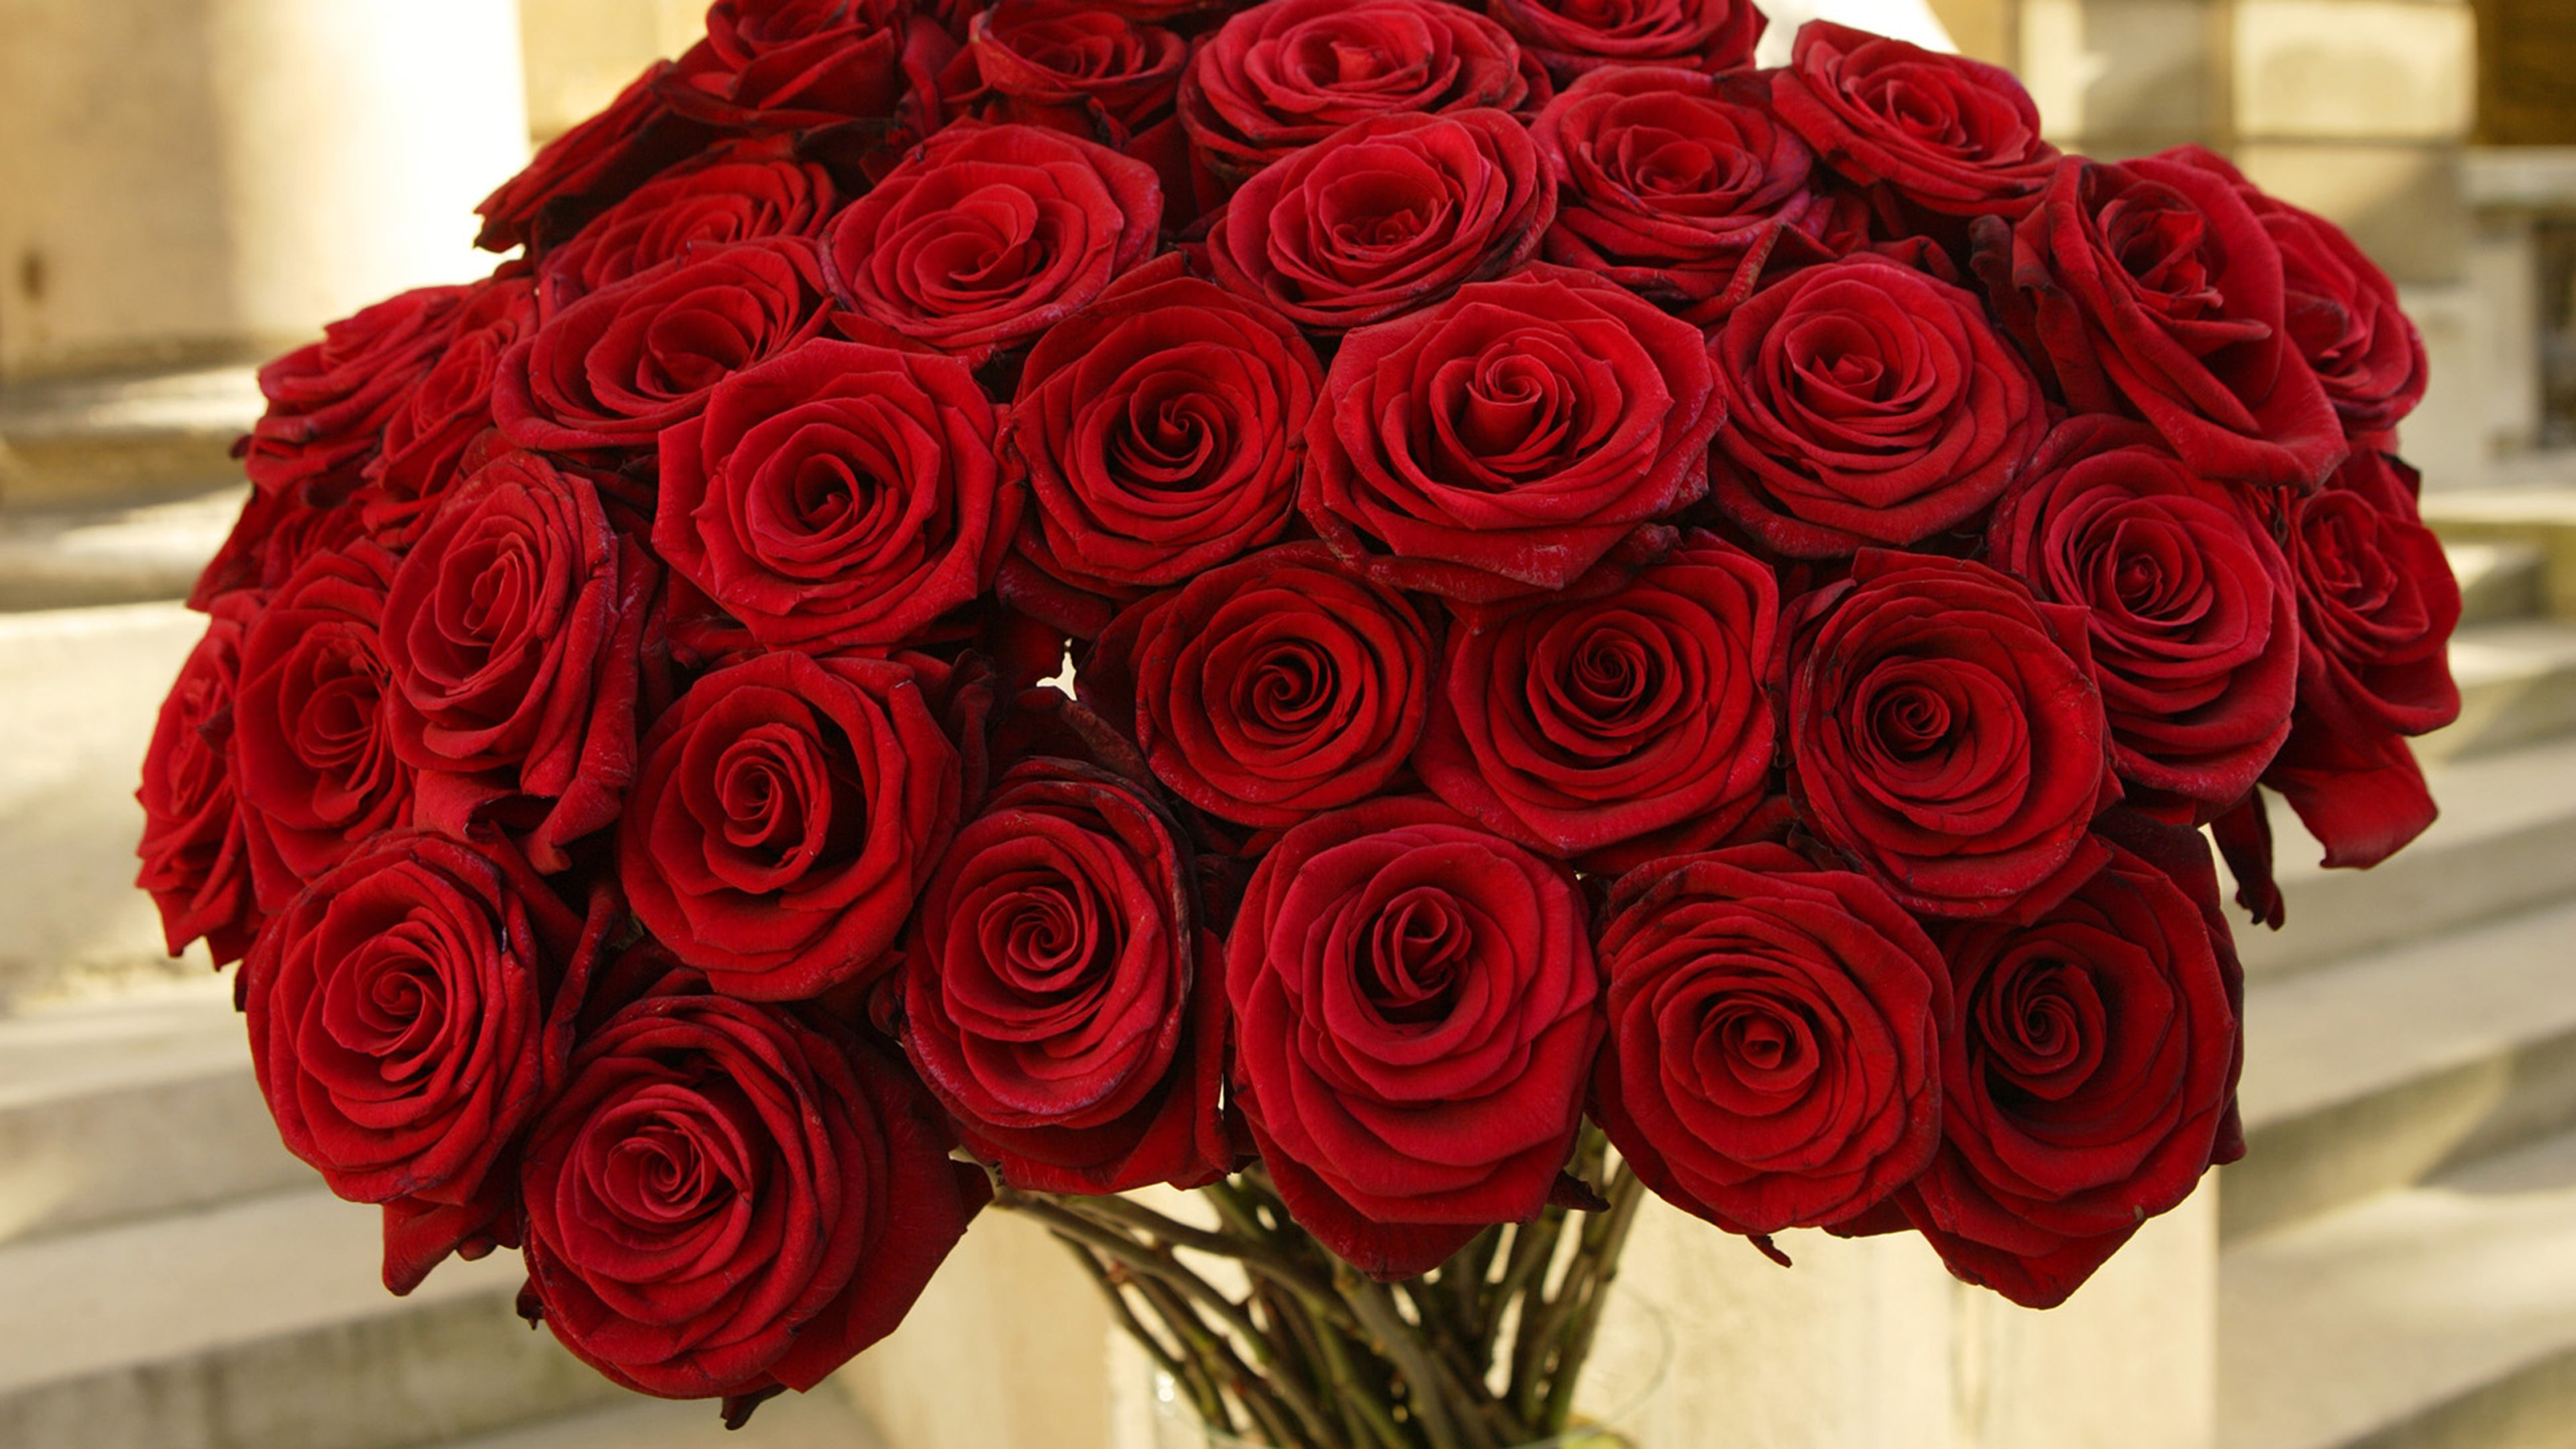 Розы были красивы и пышны пробежав. Чиройлик Гулар. Шикарный букет роз. Шикарный букет красных роз.